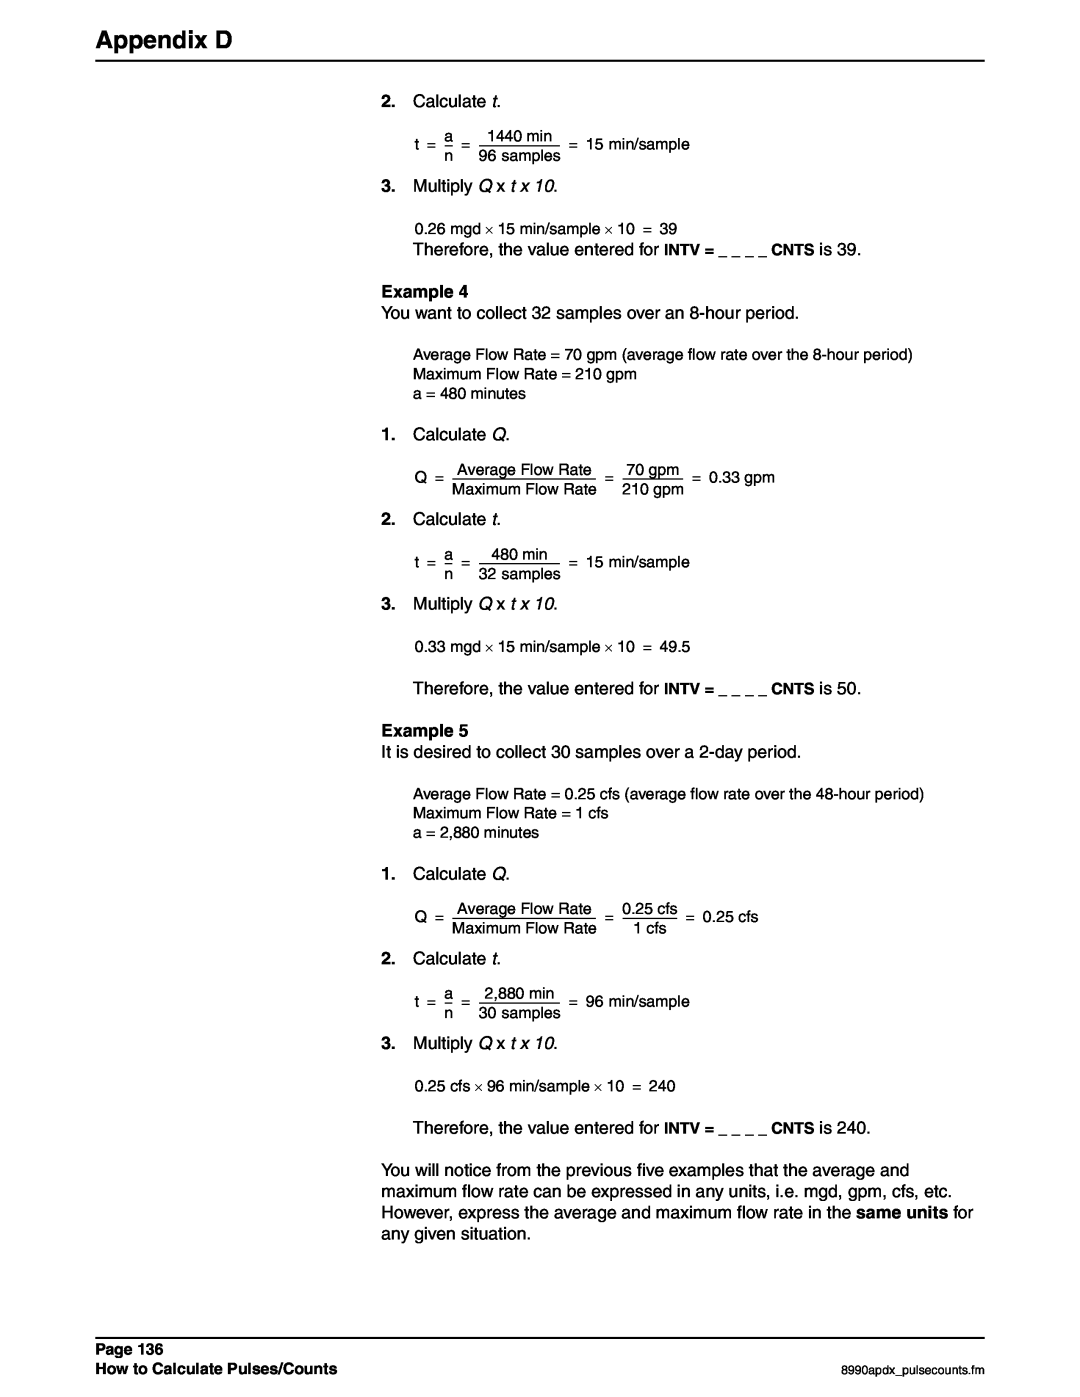 Hach 900 MAX manual Appendix D, Calculate t, Example 